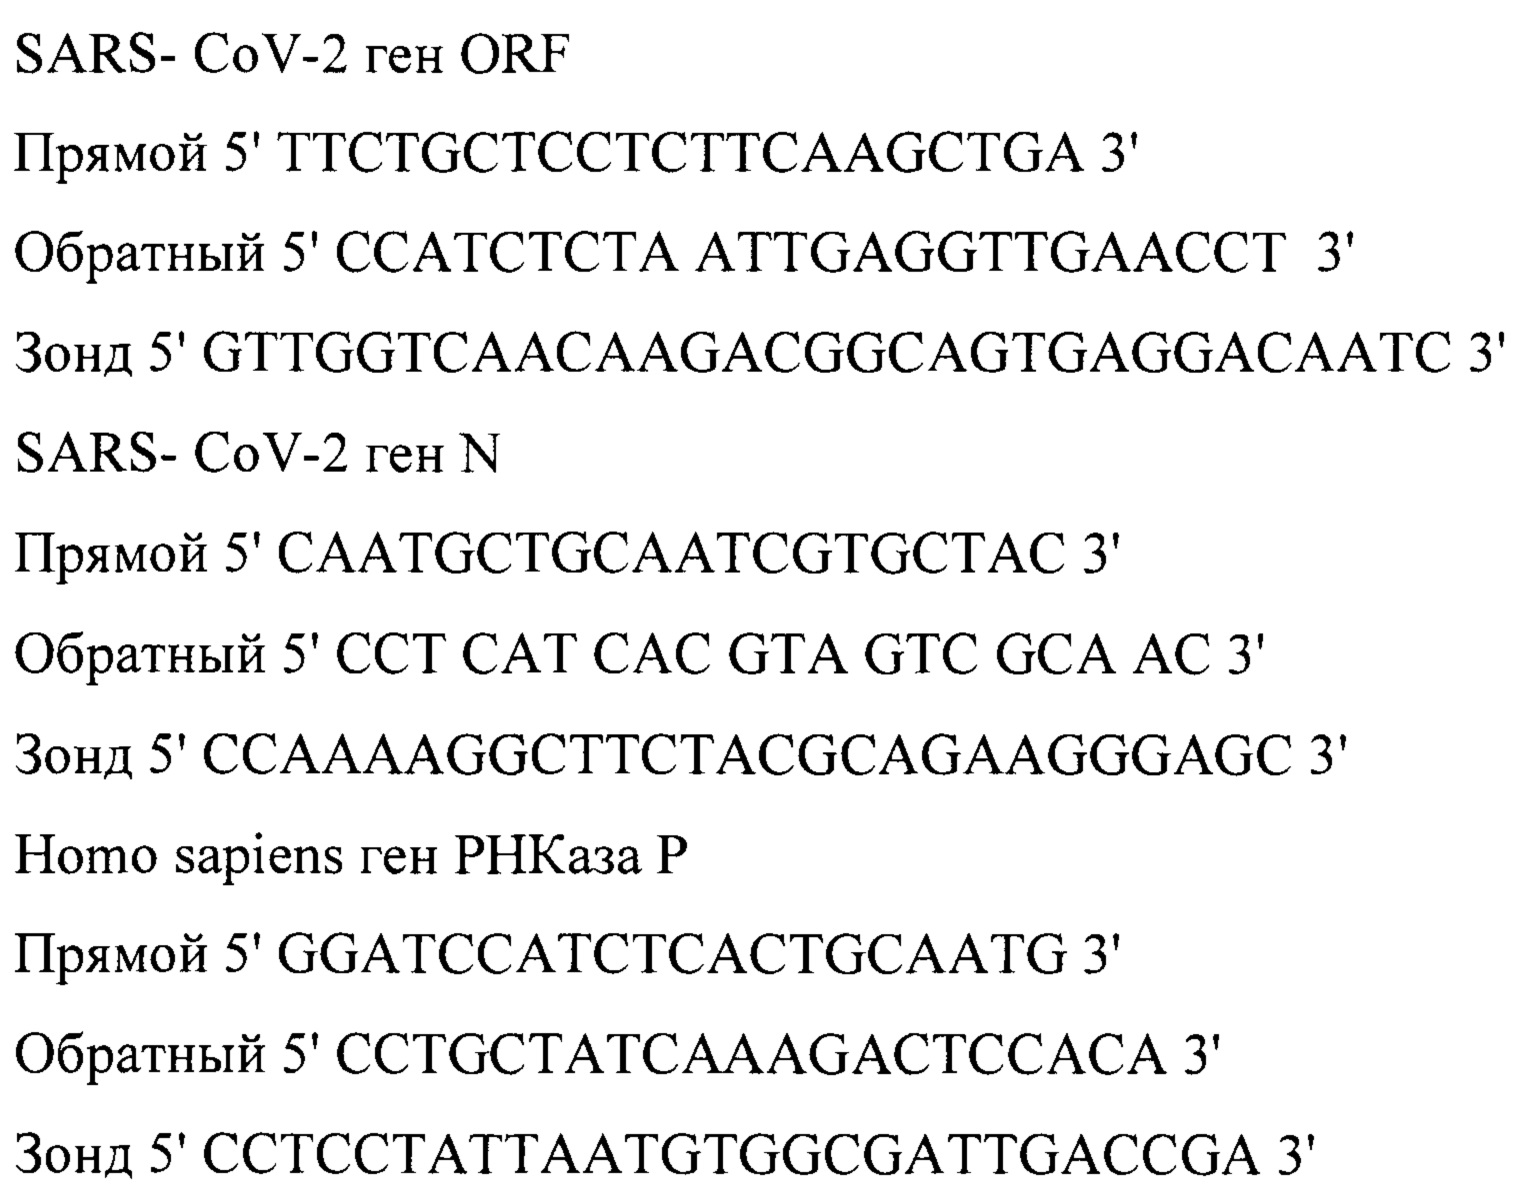 Набор реагентов для выявления РНК вируса SARS-CoV-2 методом прямой полимеразной цепной реакции в режиме реального времени